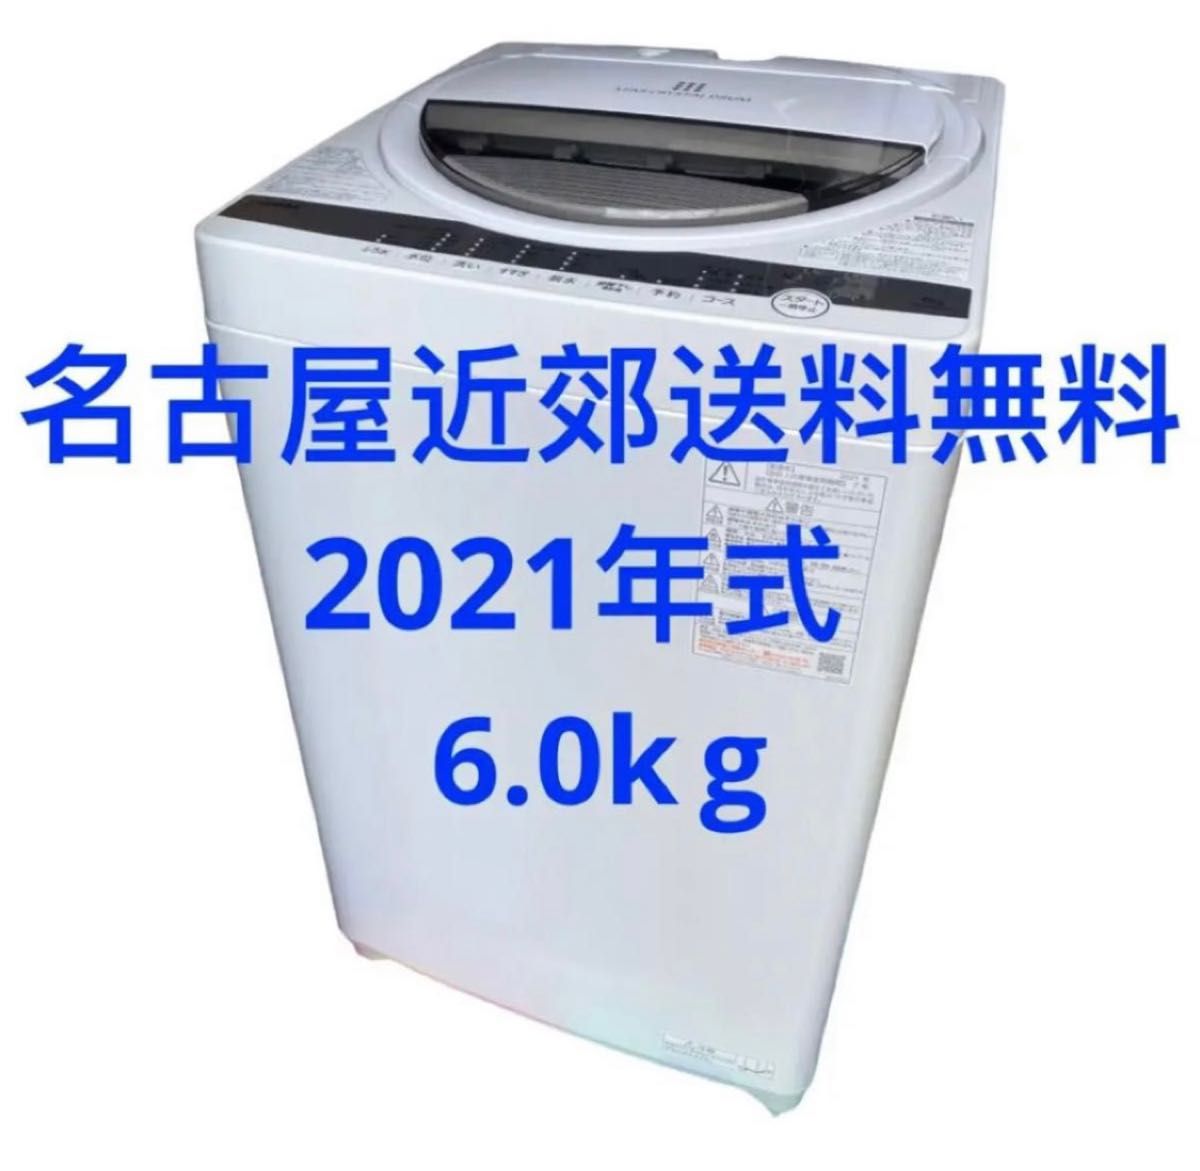 愛知県名古屋市近郊限定送料設置無料2021年式東芝全自動洗濯機6.0kg